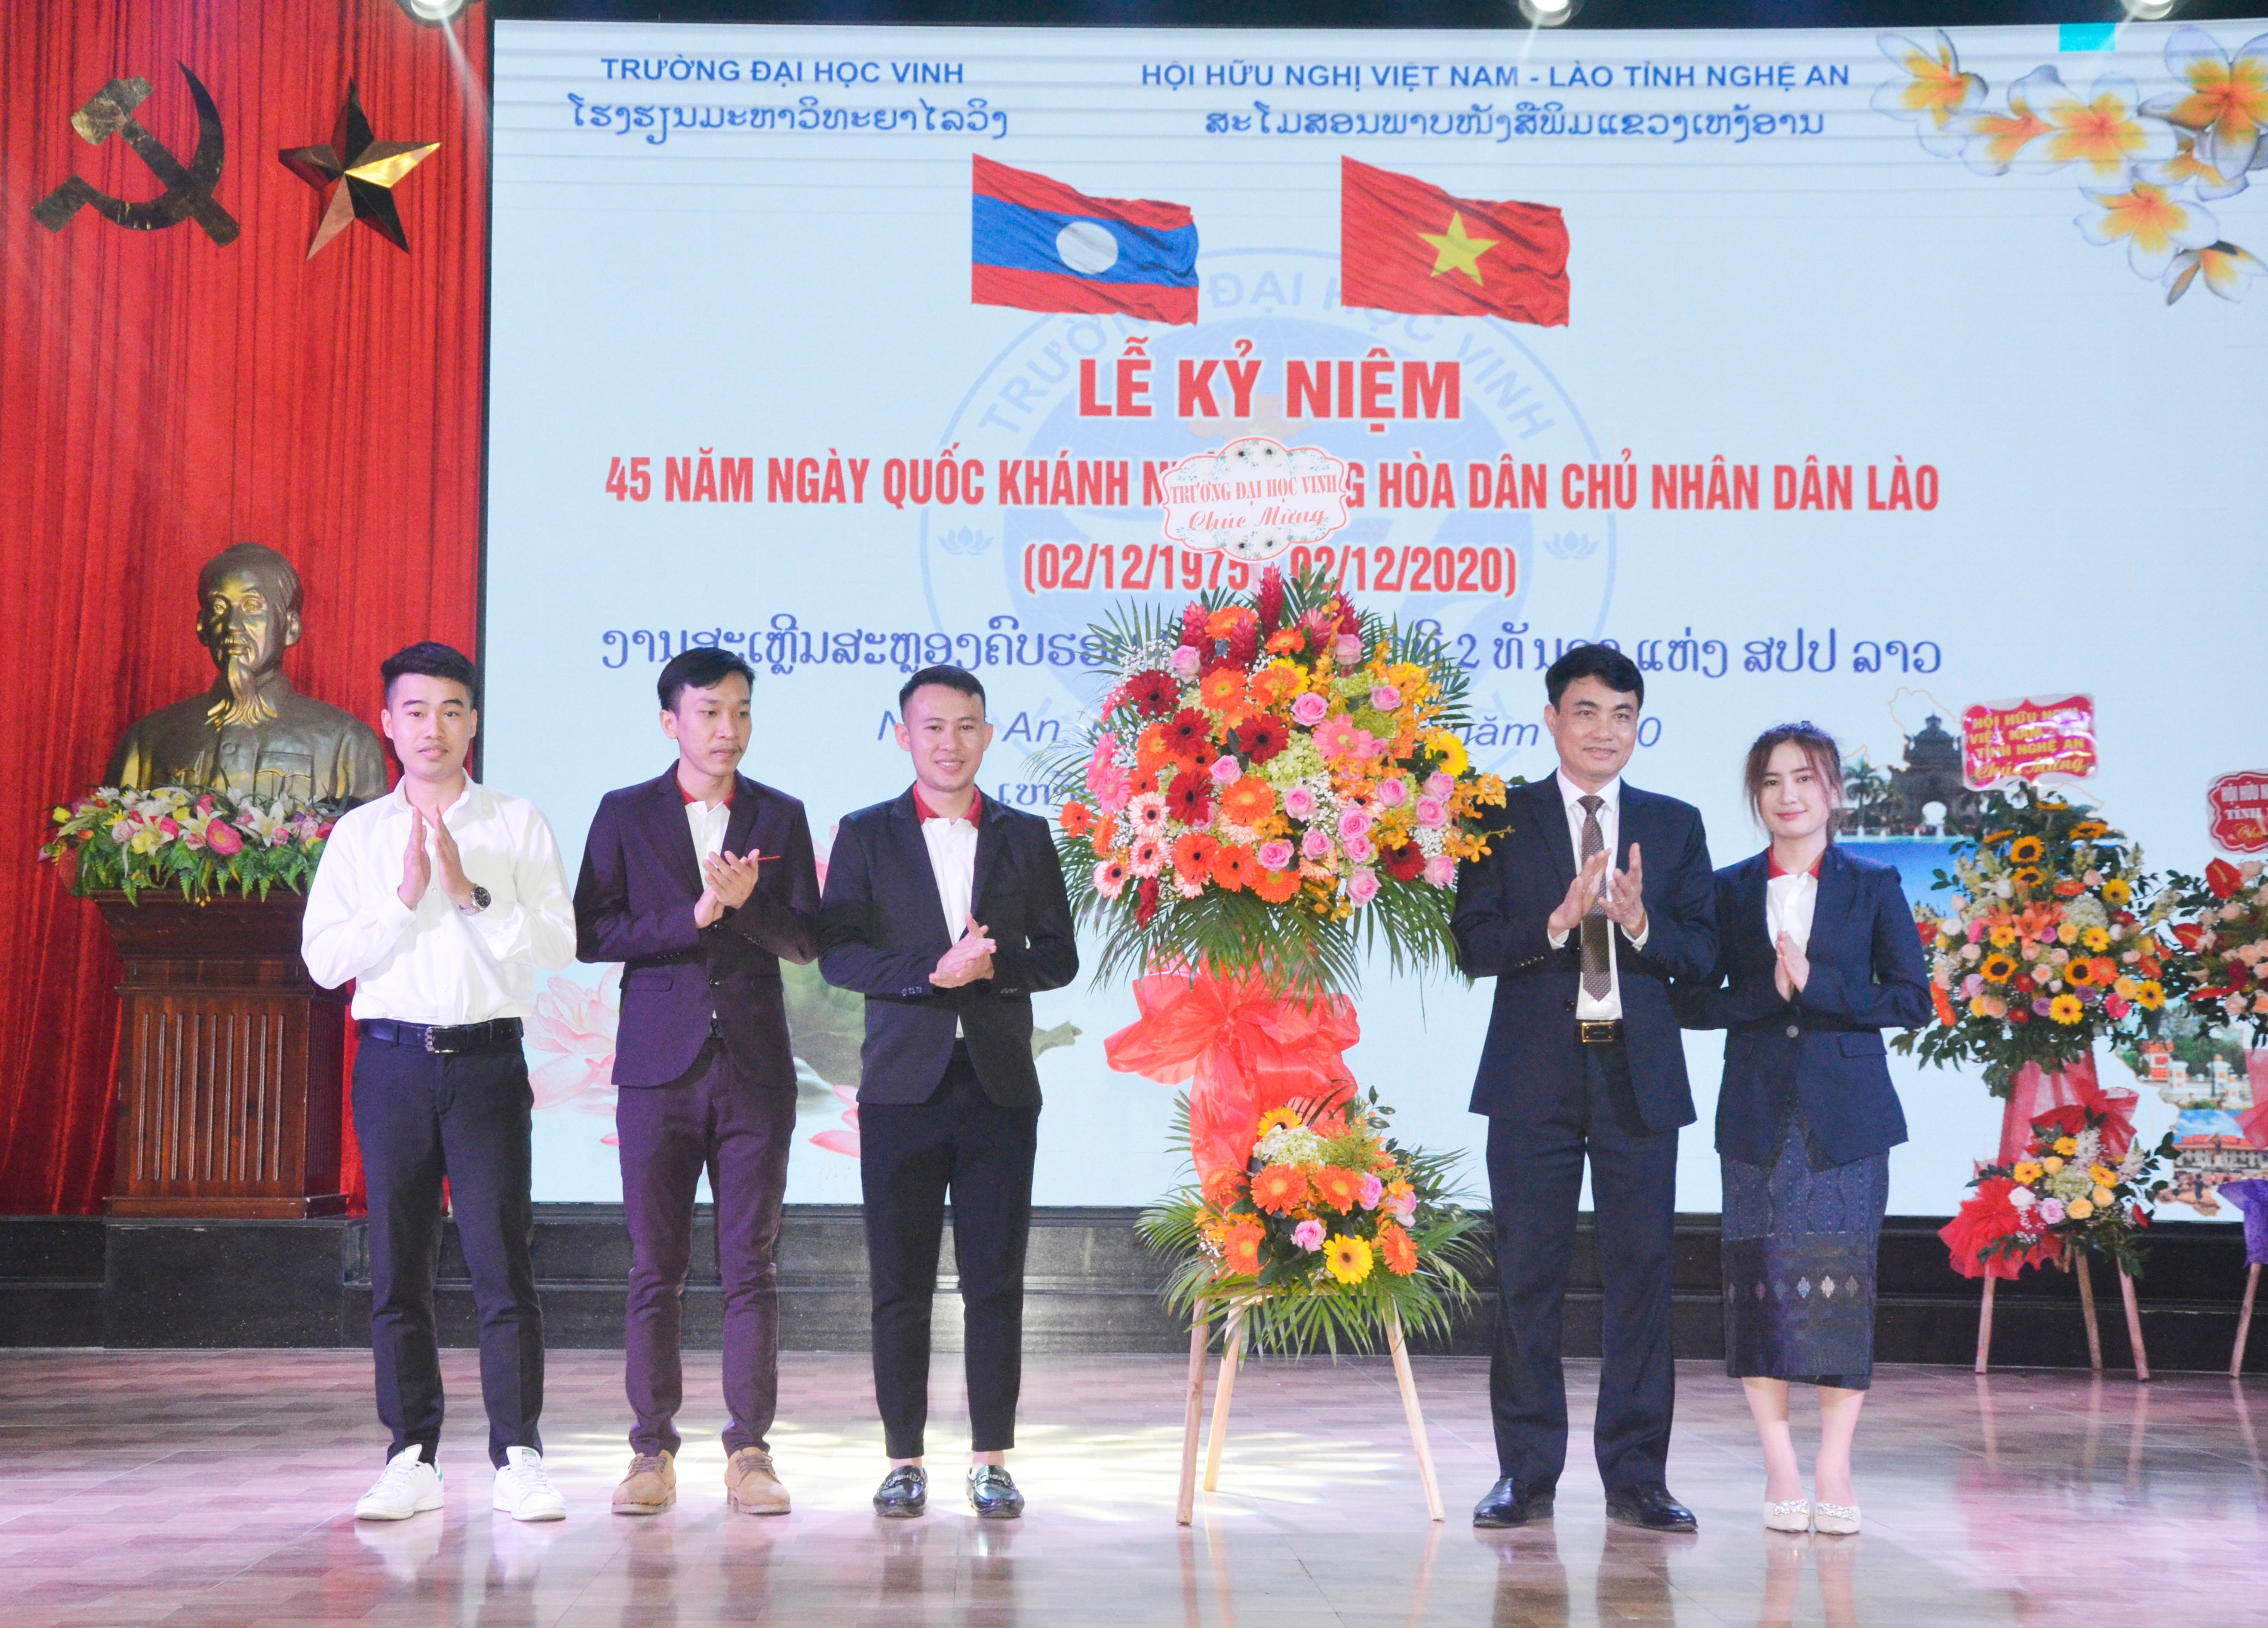 Trường Đại học Vinh tặng hoa chúc mừng các lưu học sinh Lào. Ảnh: Thanh Lê